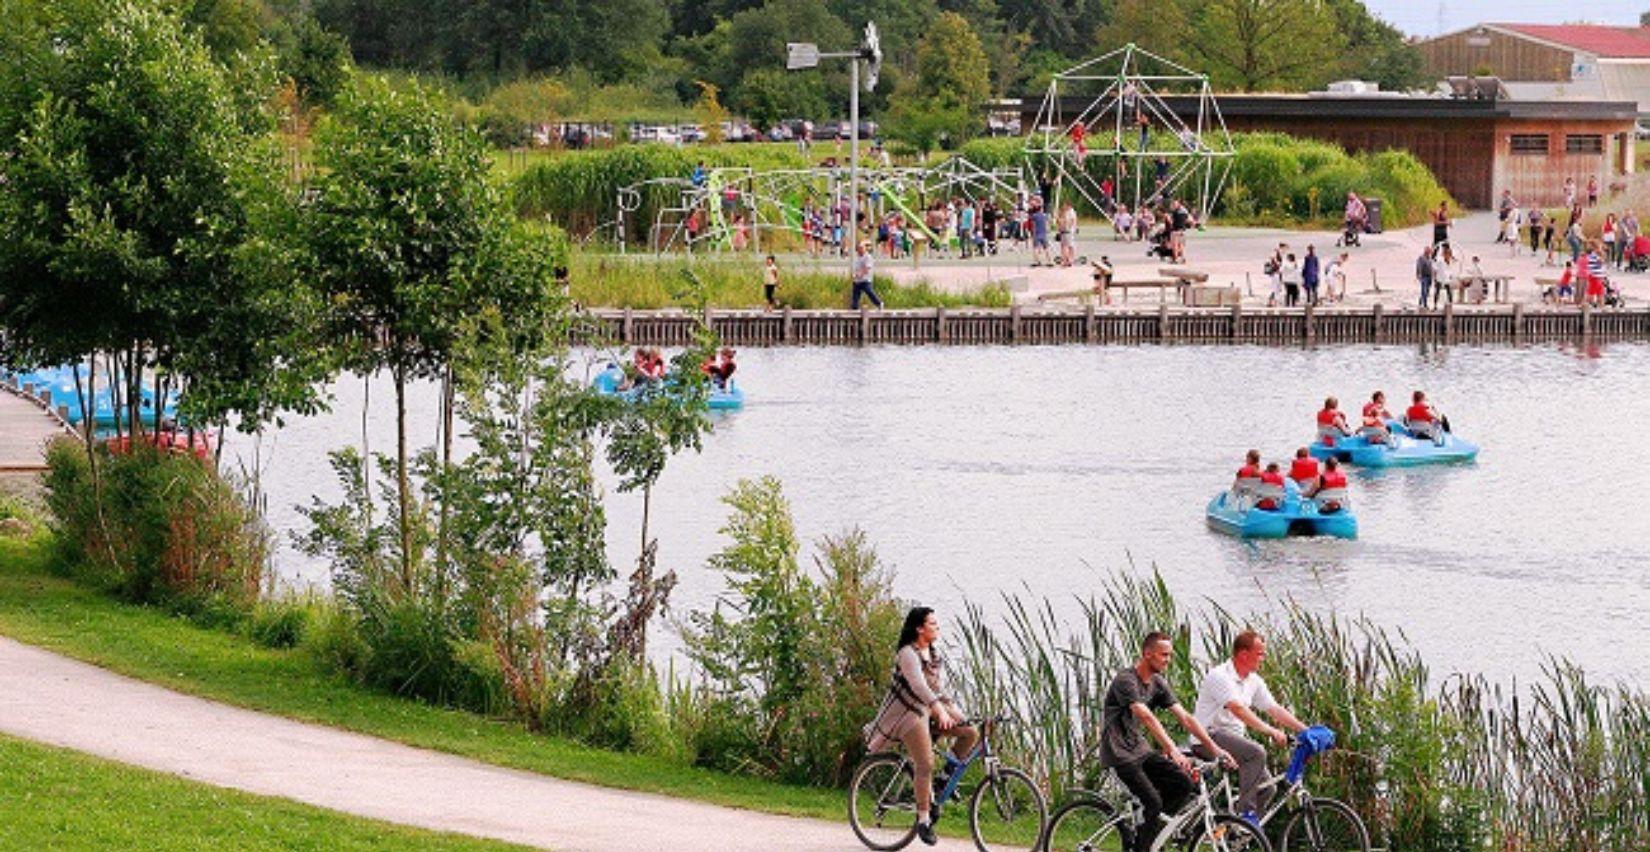 Le Parc Loisirs et Nature de La Porte du Hainaut, un lieu idéal en famille!